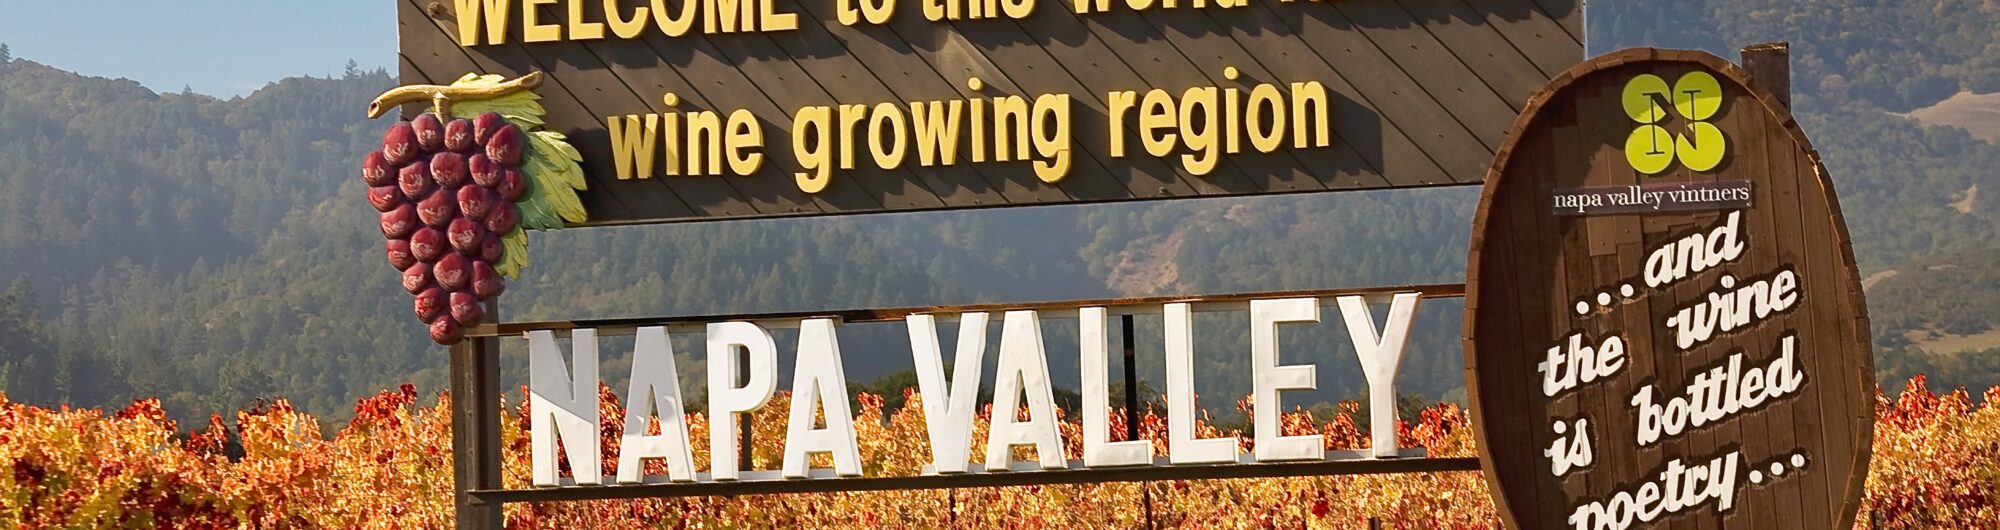 Napa Valley wycieczka